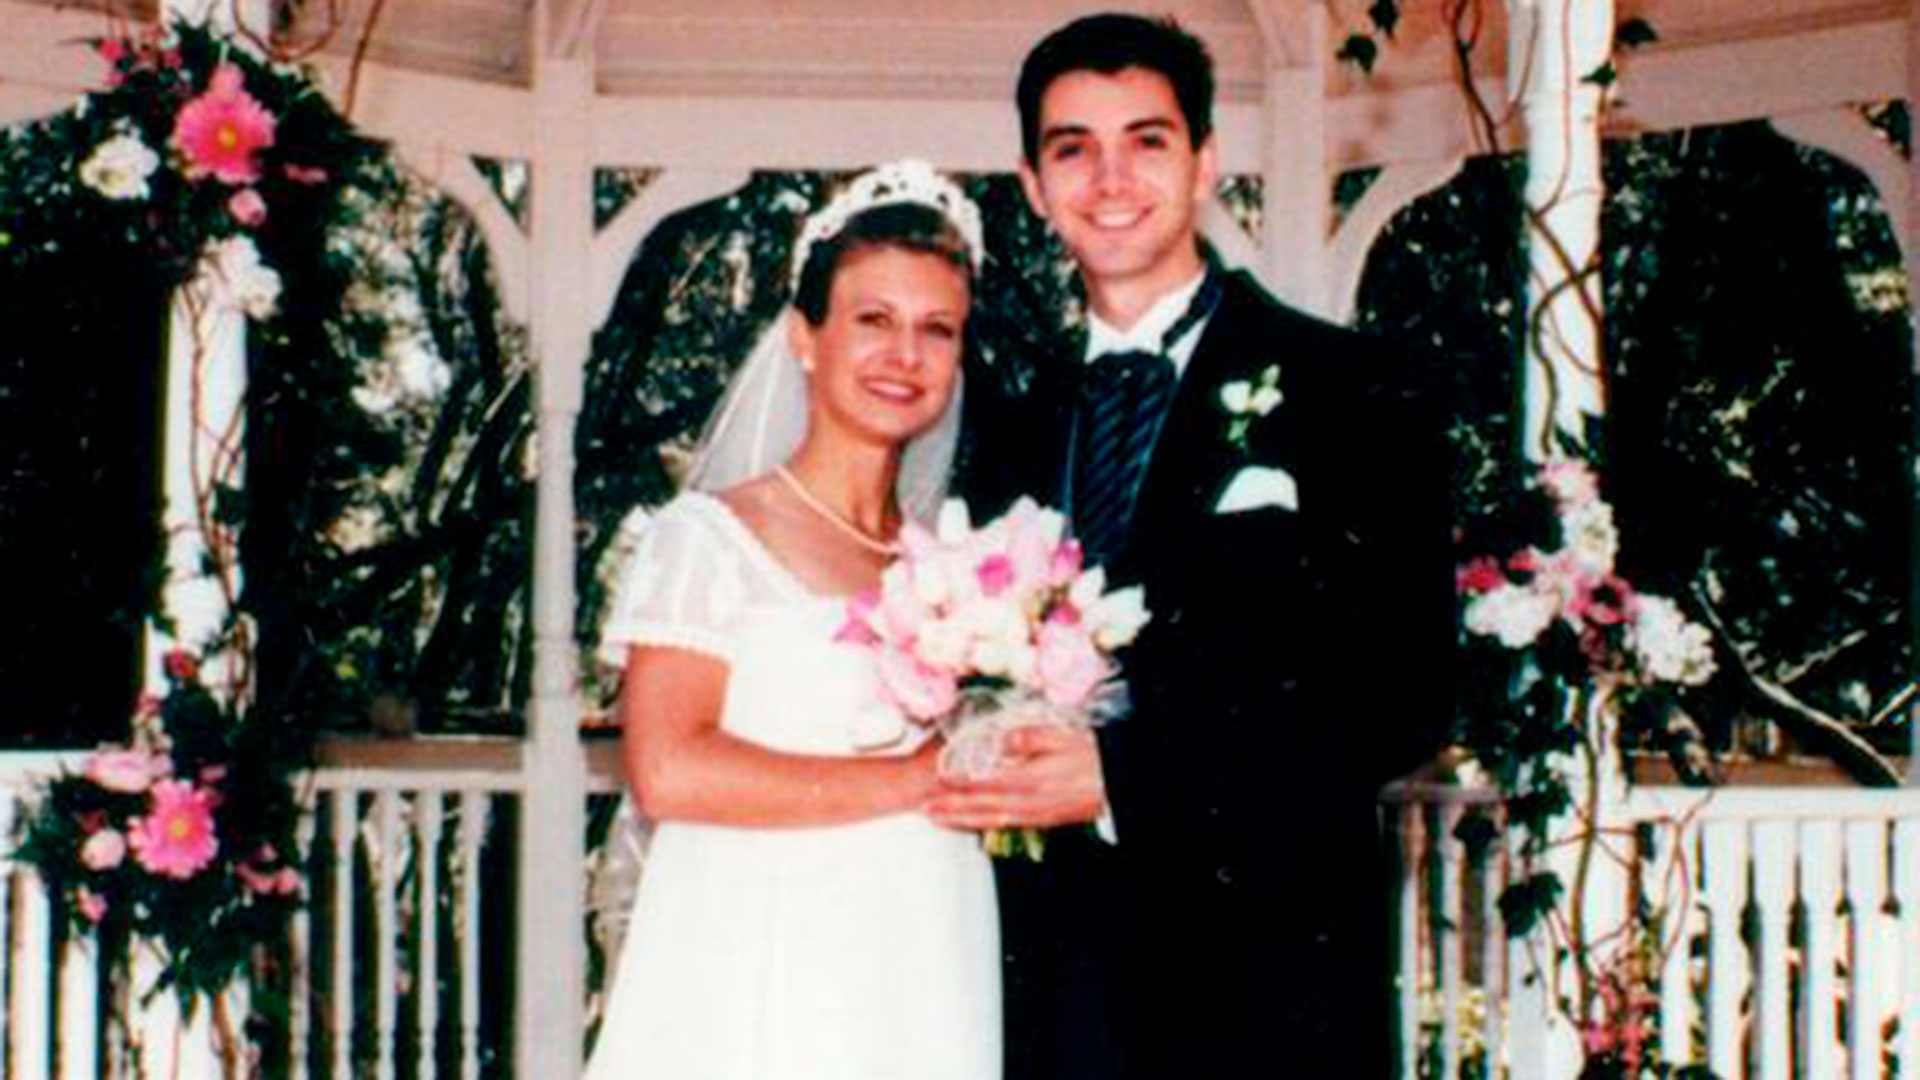 Después de cinco años de relación, el 5 de junio de 1999, Kristin (con 22 años) y Gregory (con 25) se casaron. En el video de la ceremonia el novio dejó grabado: “Kristin es la persona más maravillosa que jamás encontré. No puedo esperar a pasar el resto de mi vida con ella”